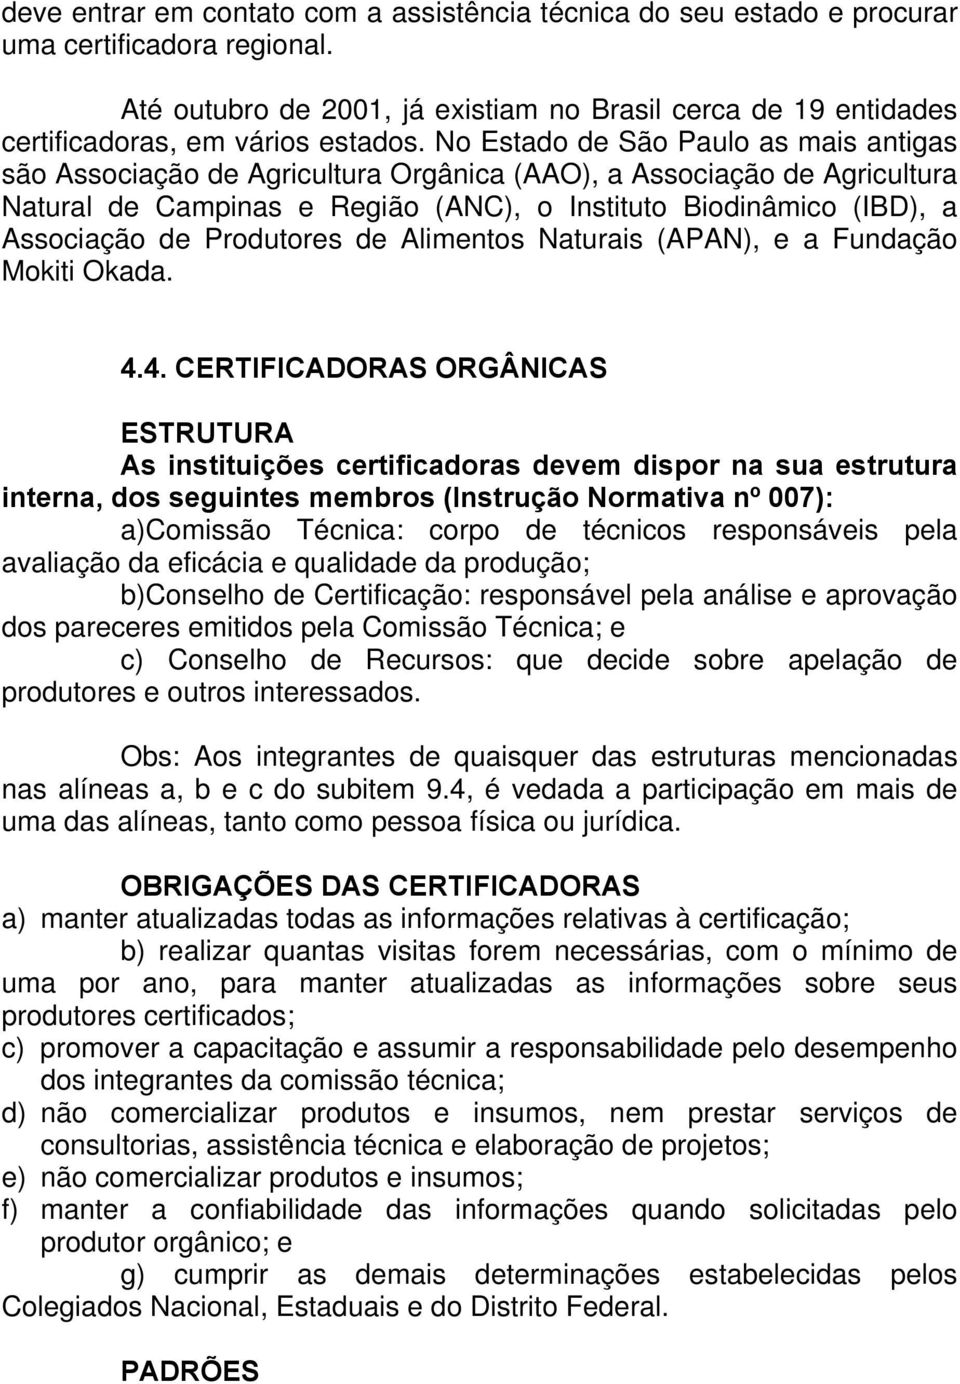 No Estado de São Paulo as mais antigas são Associação de Agricultura Orgânica (AAO), a Associação de Agricultura Natural de Campinas e Região (ANC), o Instituto Biodinâmico (IBD), a Associação de